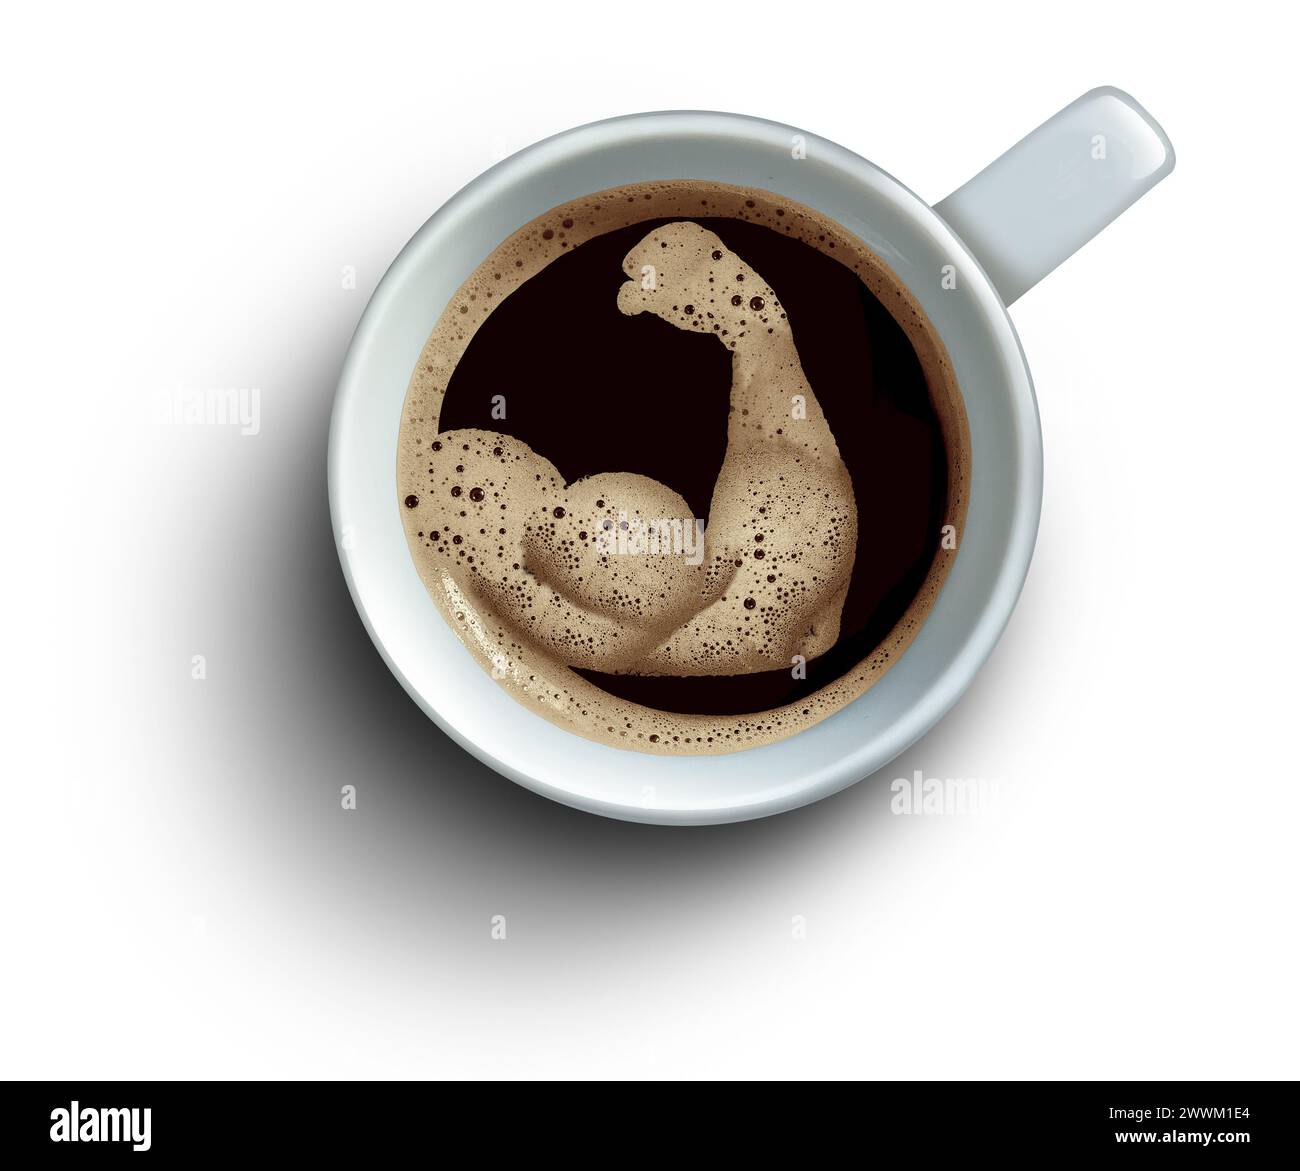 Benefici per la salute del caffè come trigonellina mantenere i muscoli sani e ridurre l'infiammazione e la salute del cuore aiutando nella longevità e rallentando l'invecchiamento. Foto Stock